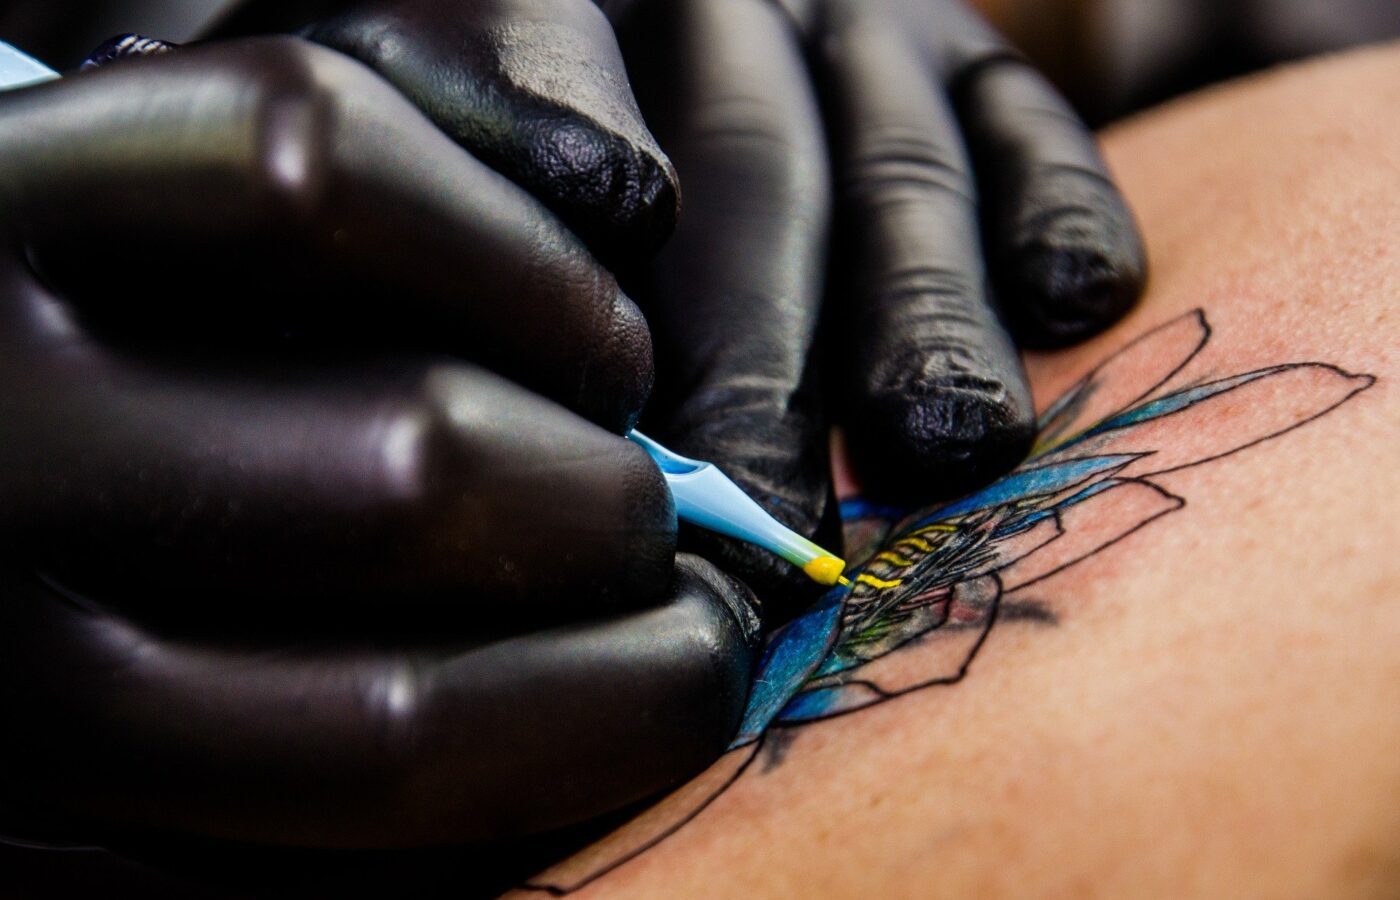 Radio Lozärn Gesundheitstipp: Was hilft bei einer Tattoo-Entzündung?